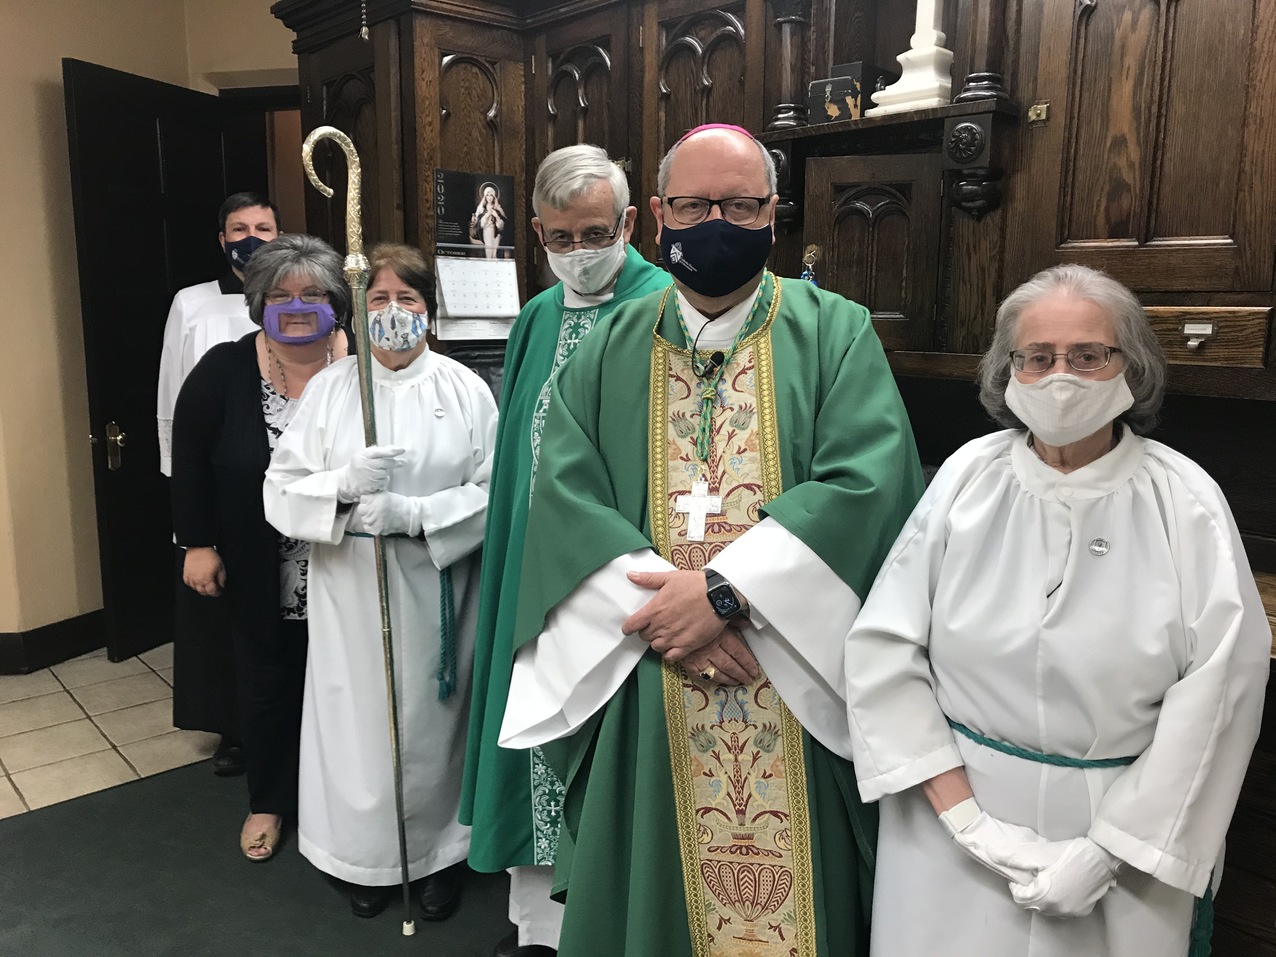 Bishop Malesic celebrates Mass during visit to St. John Nepomucene Parish